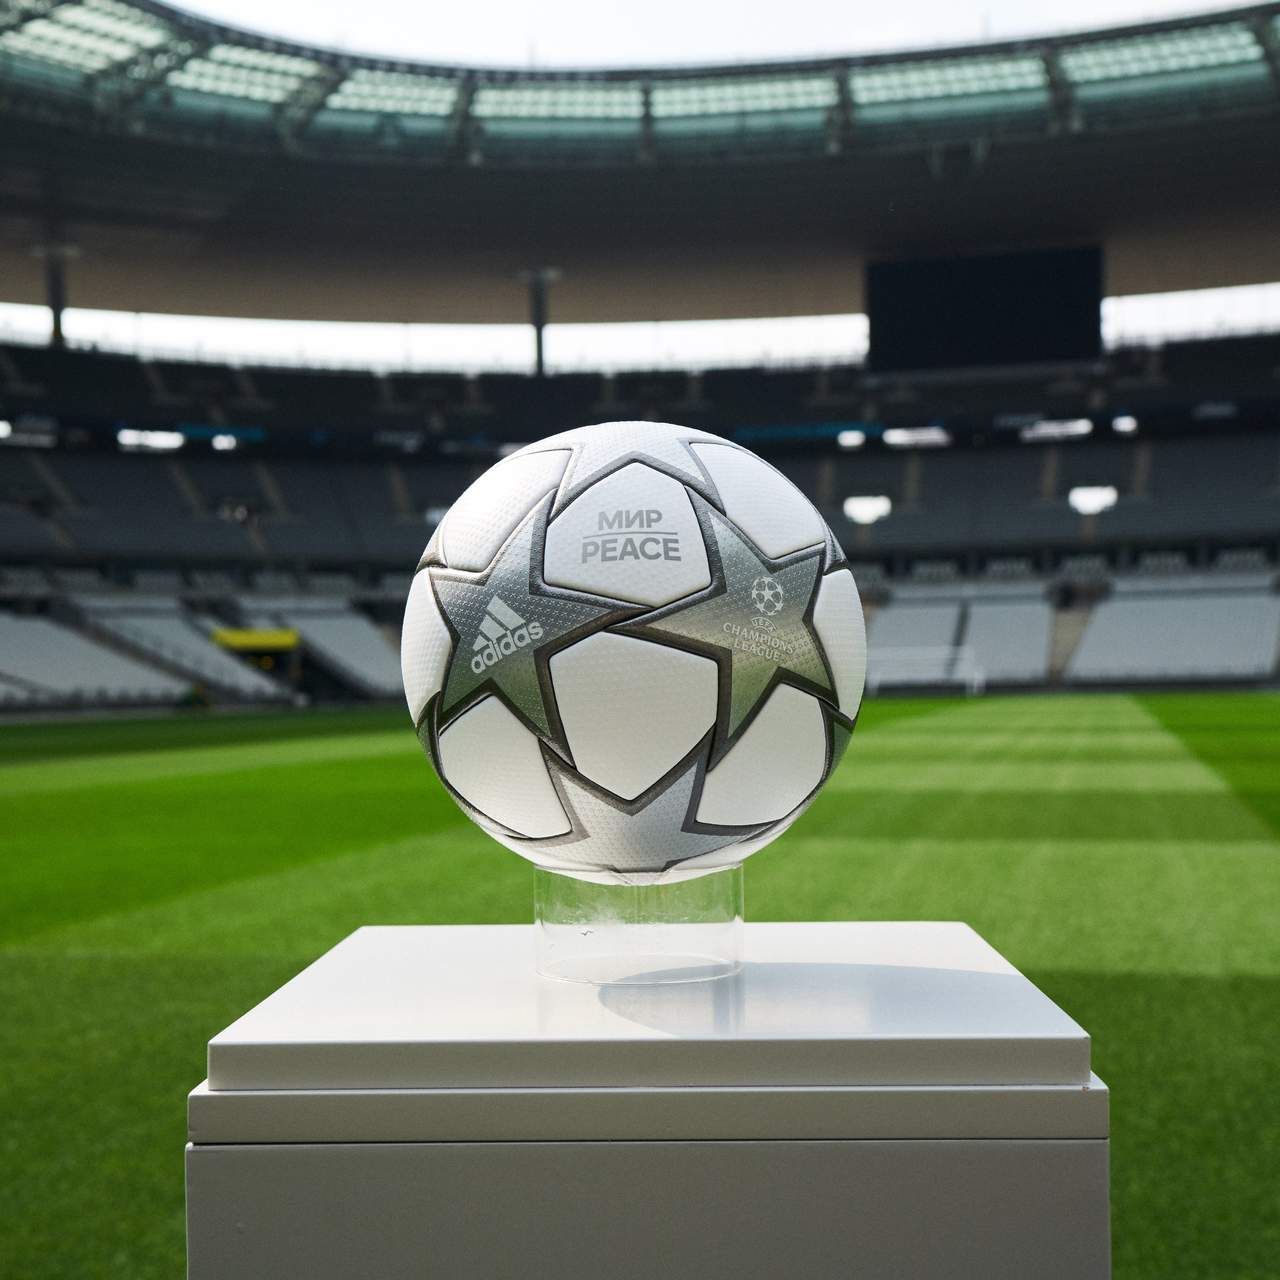 Uefa divulga preços dos ingressos para a final da Champions League 2021/22,  em Paris